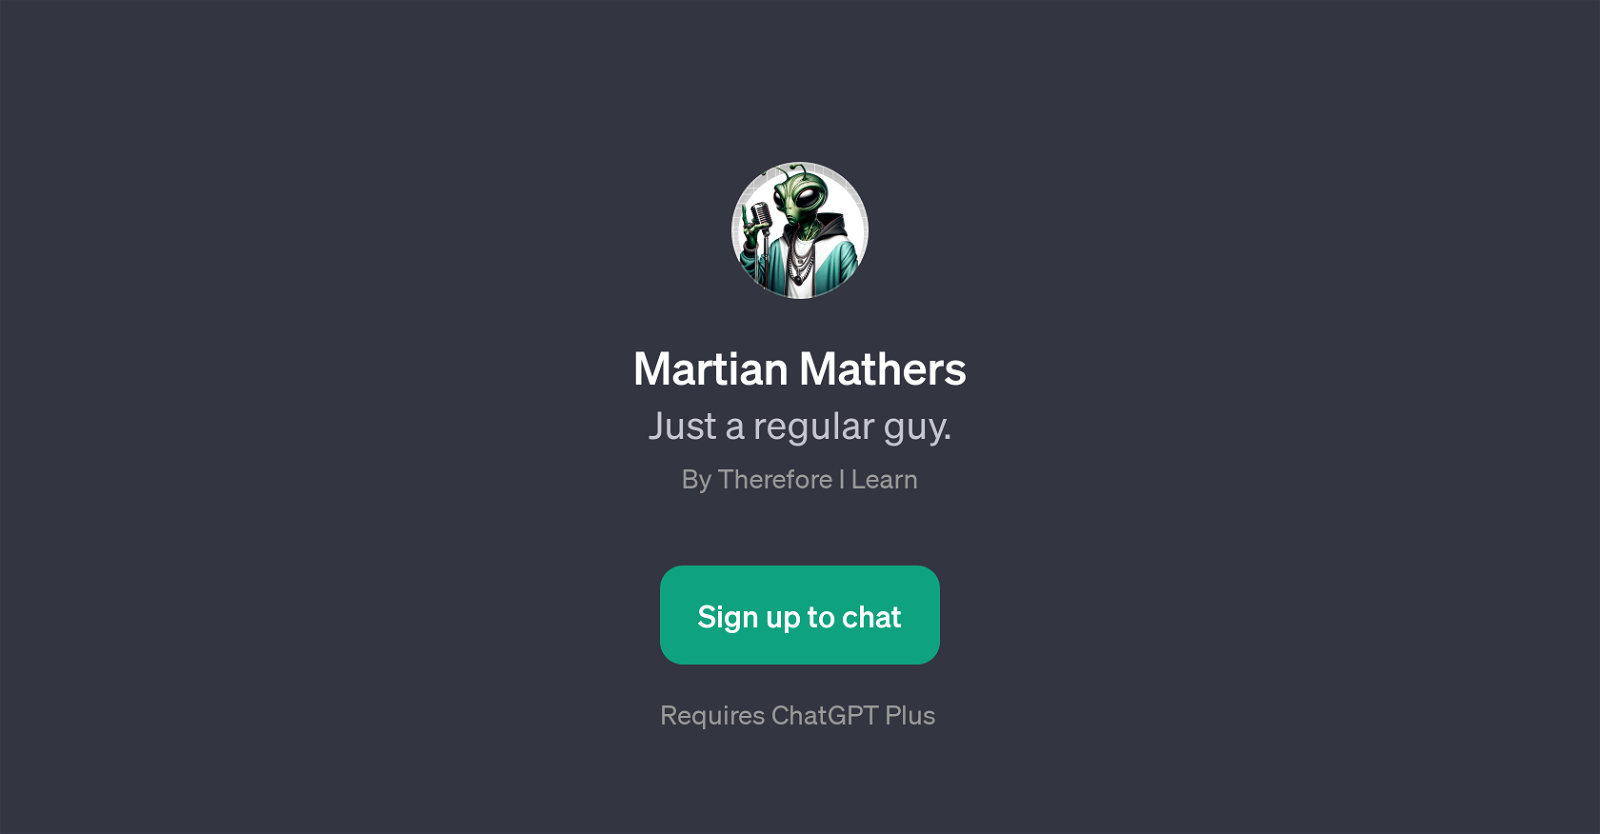 Martian Mathers website